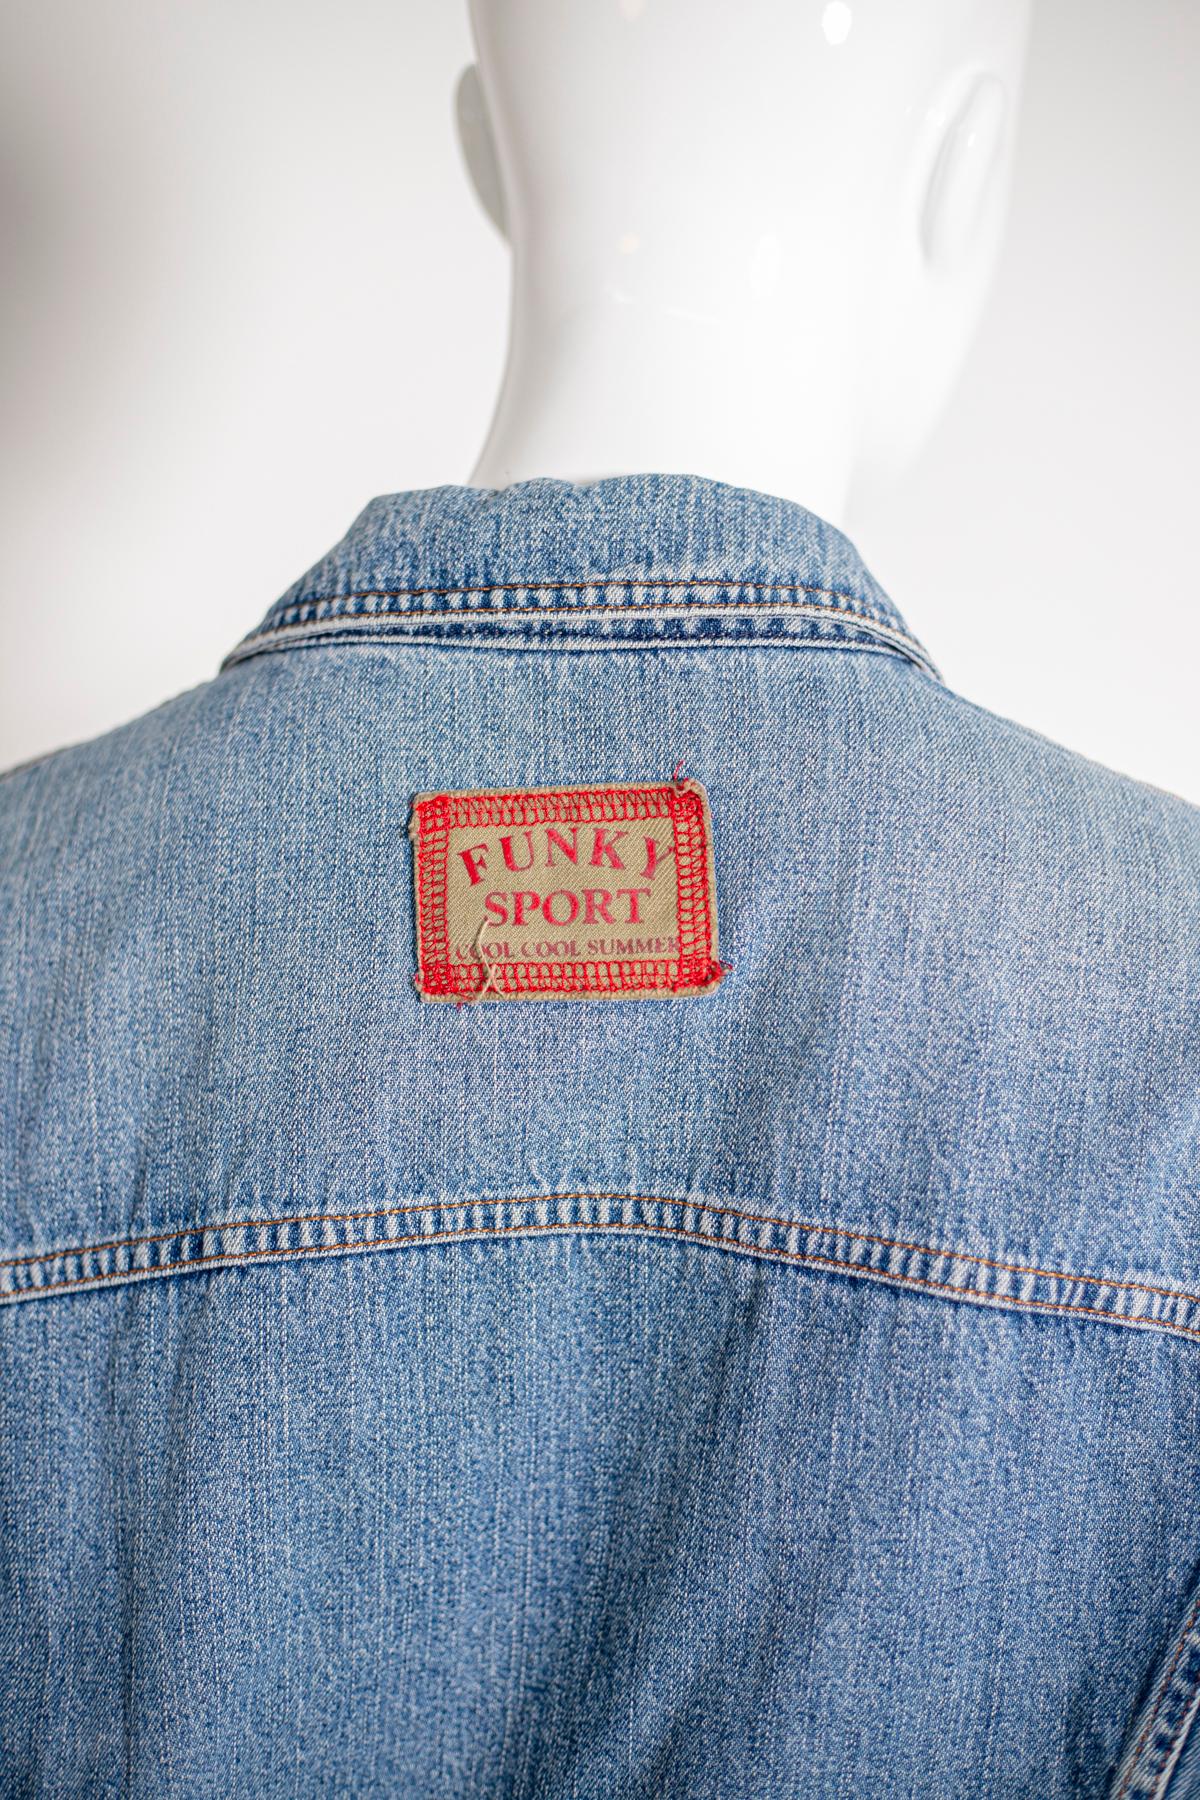 Dolce & Gabbana Vintage Jeans Jacket, Original Label For Sale 4